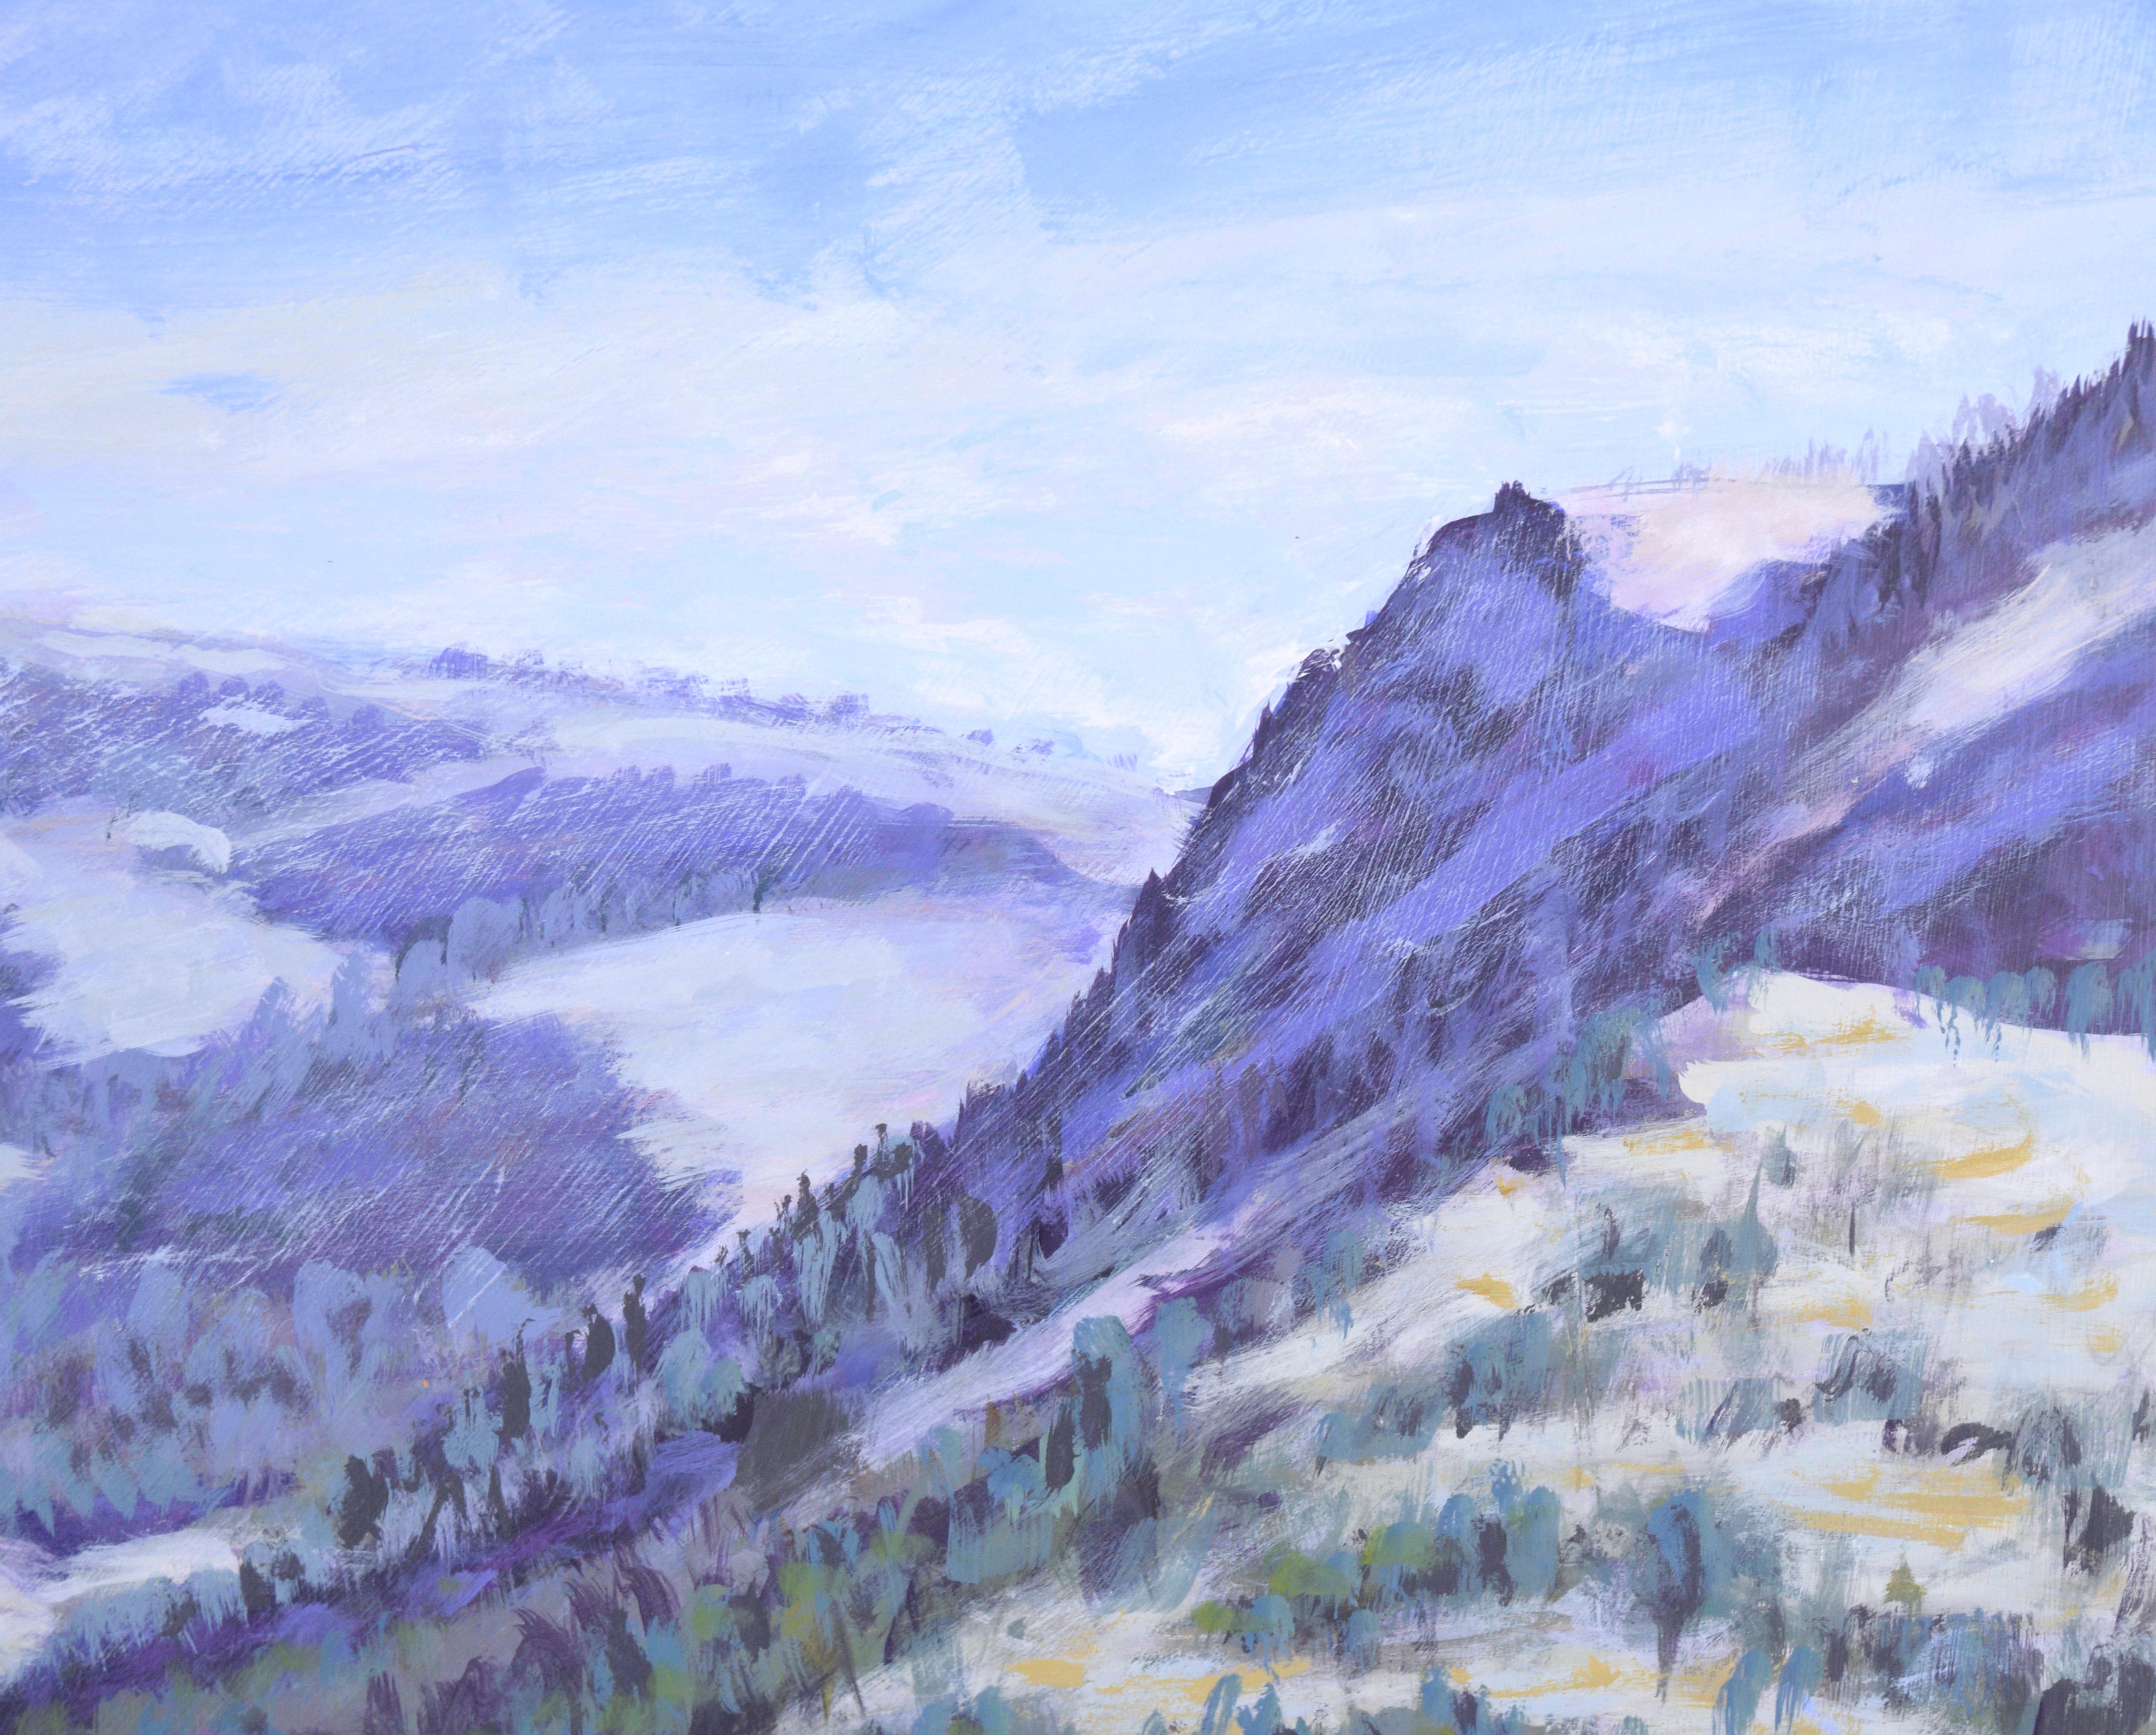 Lac de montagne - paysage en plein air acrylique sur panneau

Paysage de montagne luxuriant de l'artiste californien Plein Aire Nick Whiting (américain, 1943-2009). Le spectateur contemple une chaîne de montagnes couverte d'arbres à feuilles